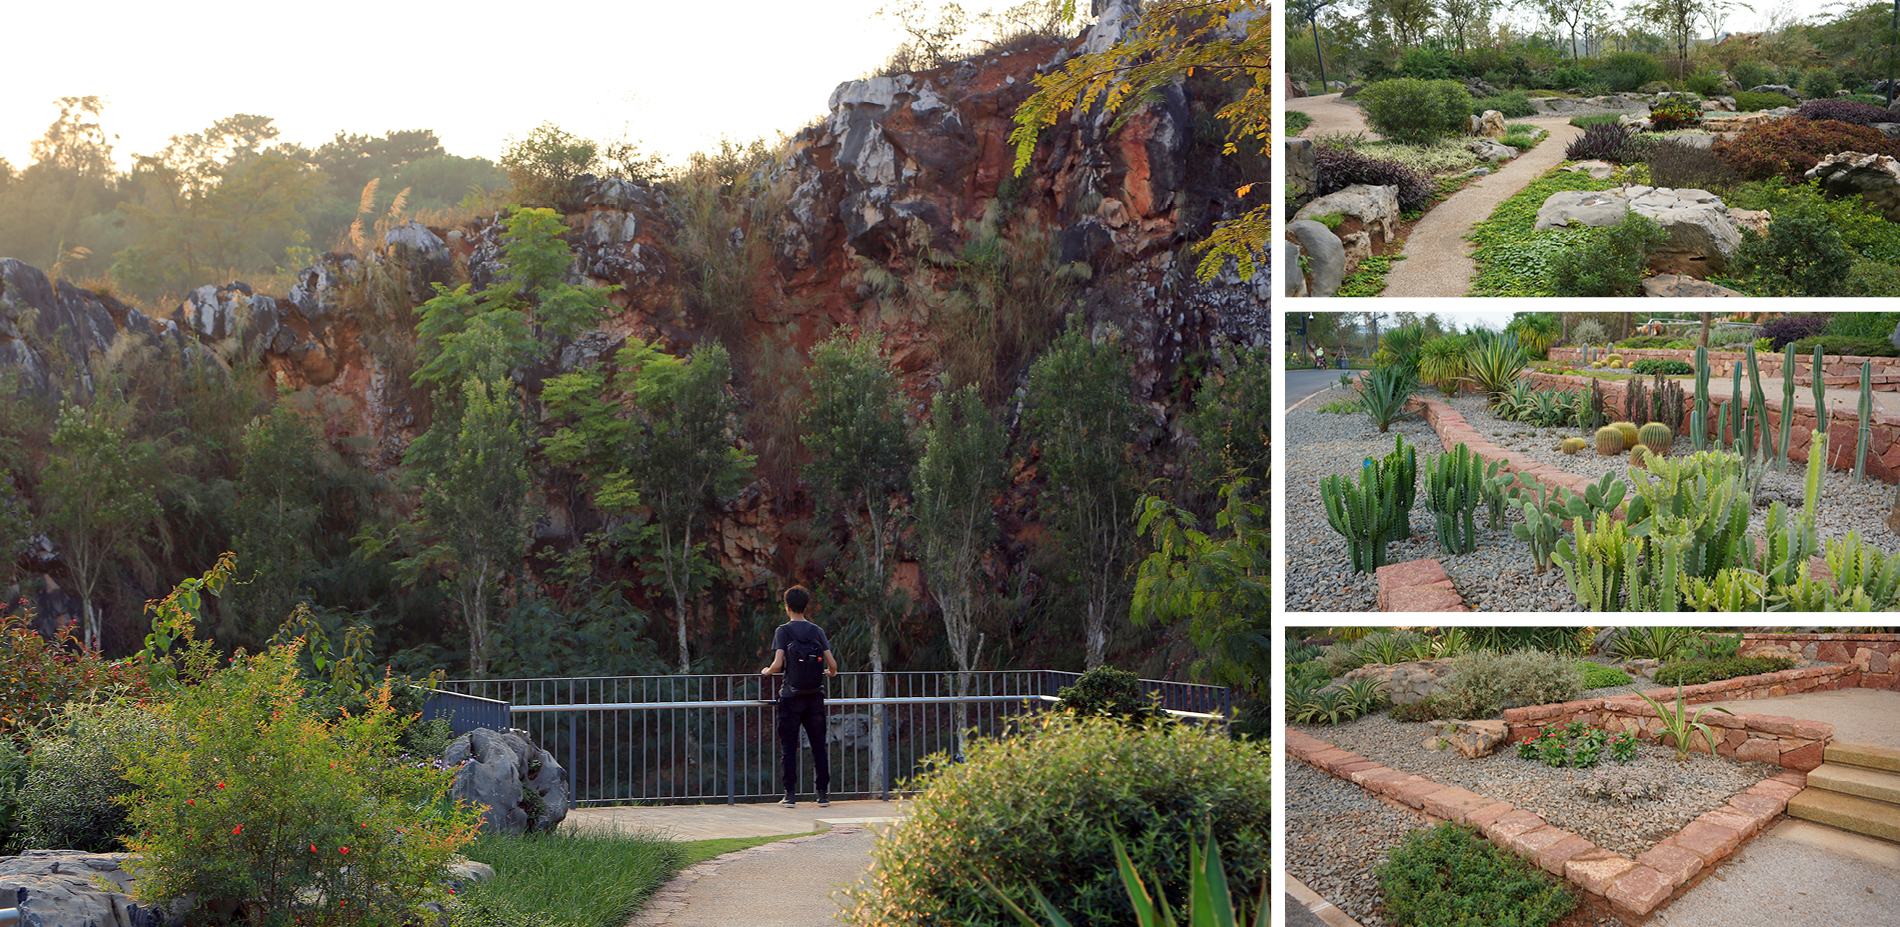 A Rock Garden Showcasing the Biodiversity (Quarry No. 3)